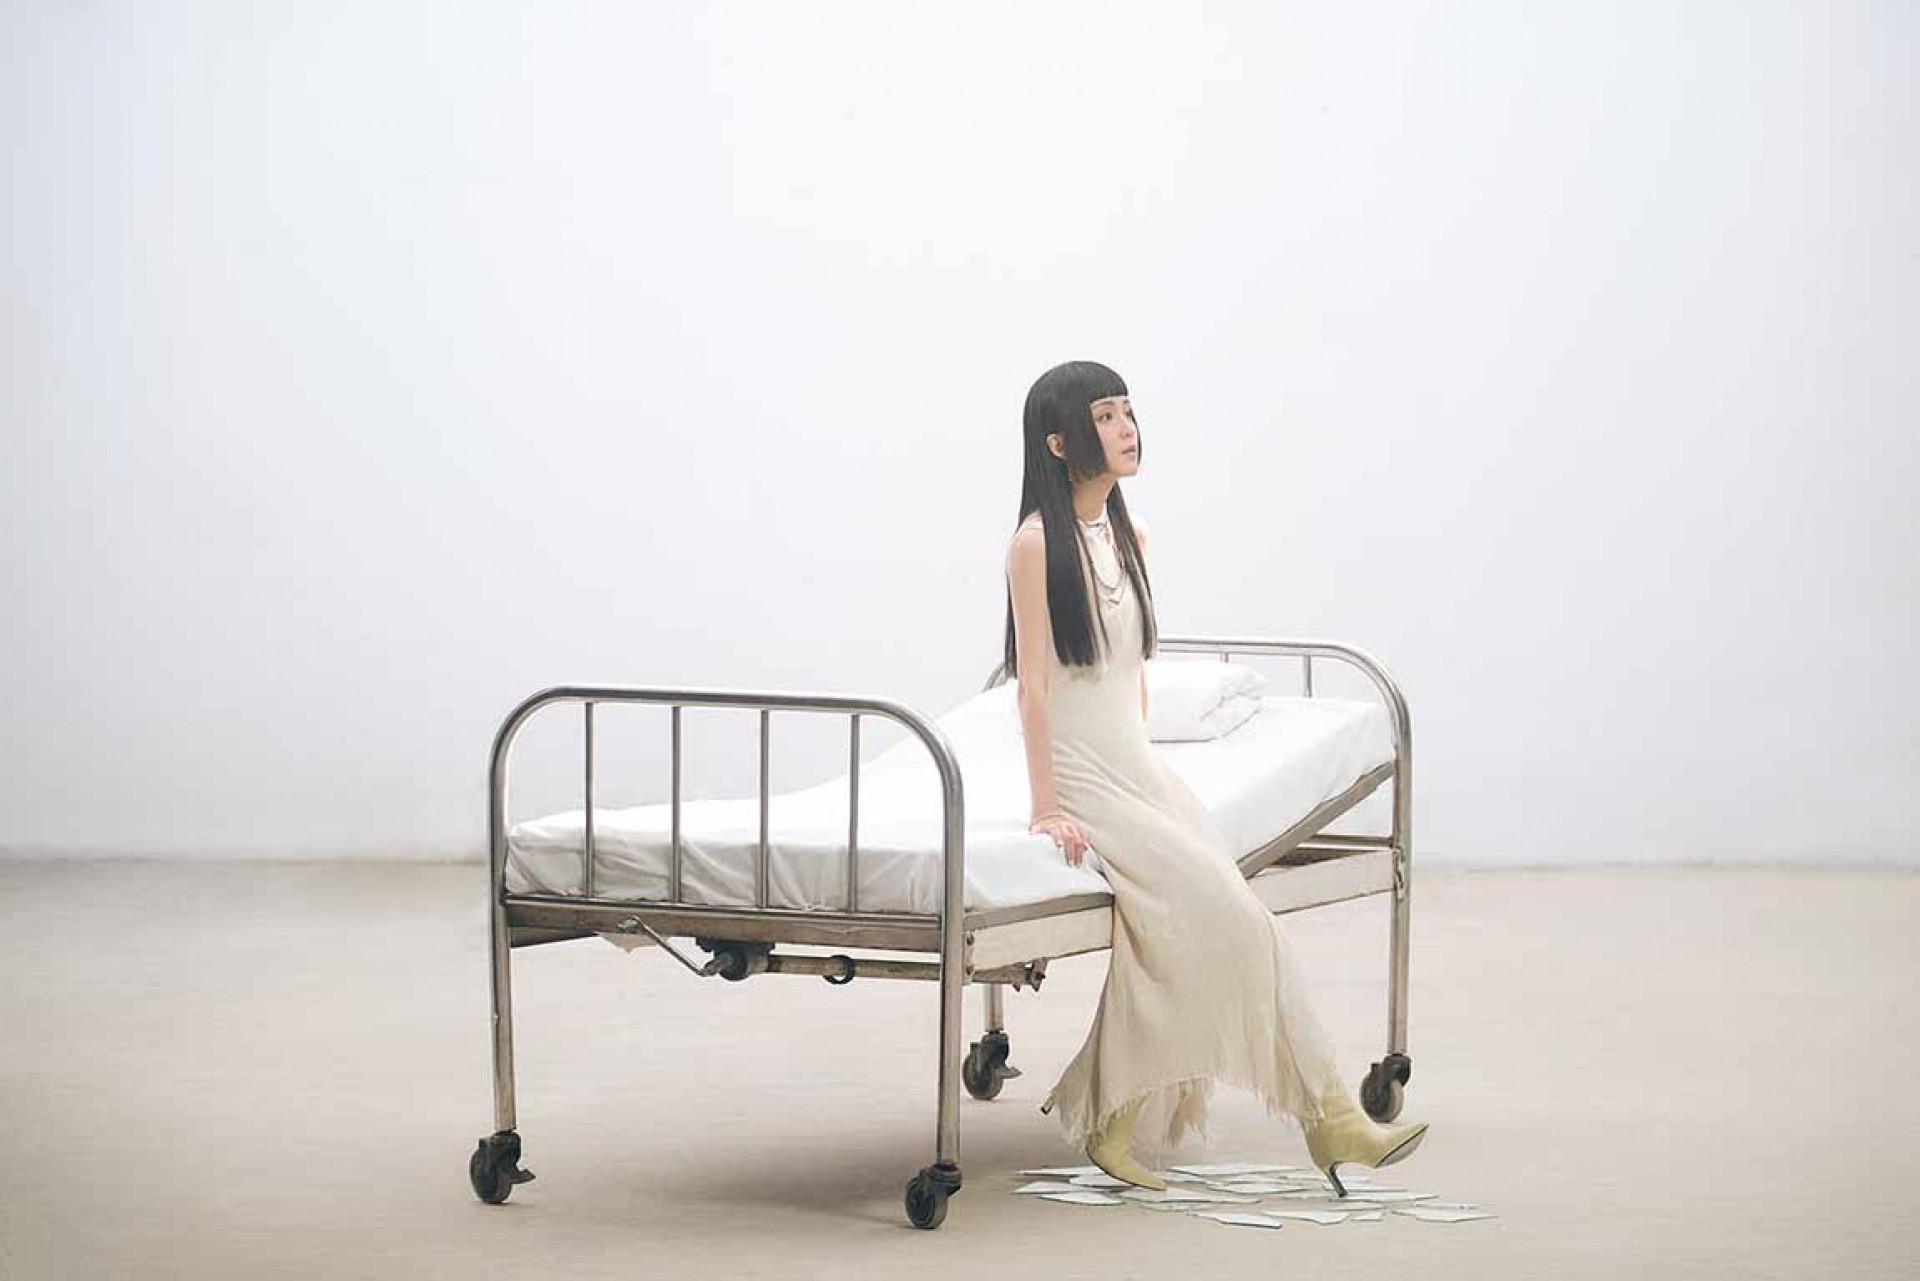 「搖滾女聲」李嫣 Bibo 於 3_5 正式發行個人首張創作專輯《第六病房》